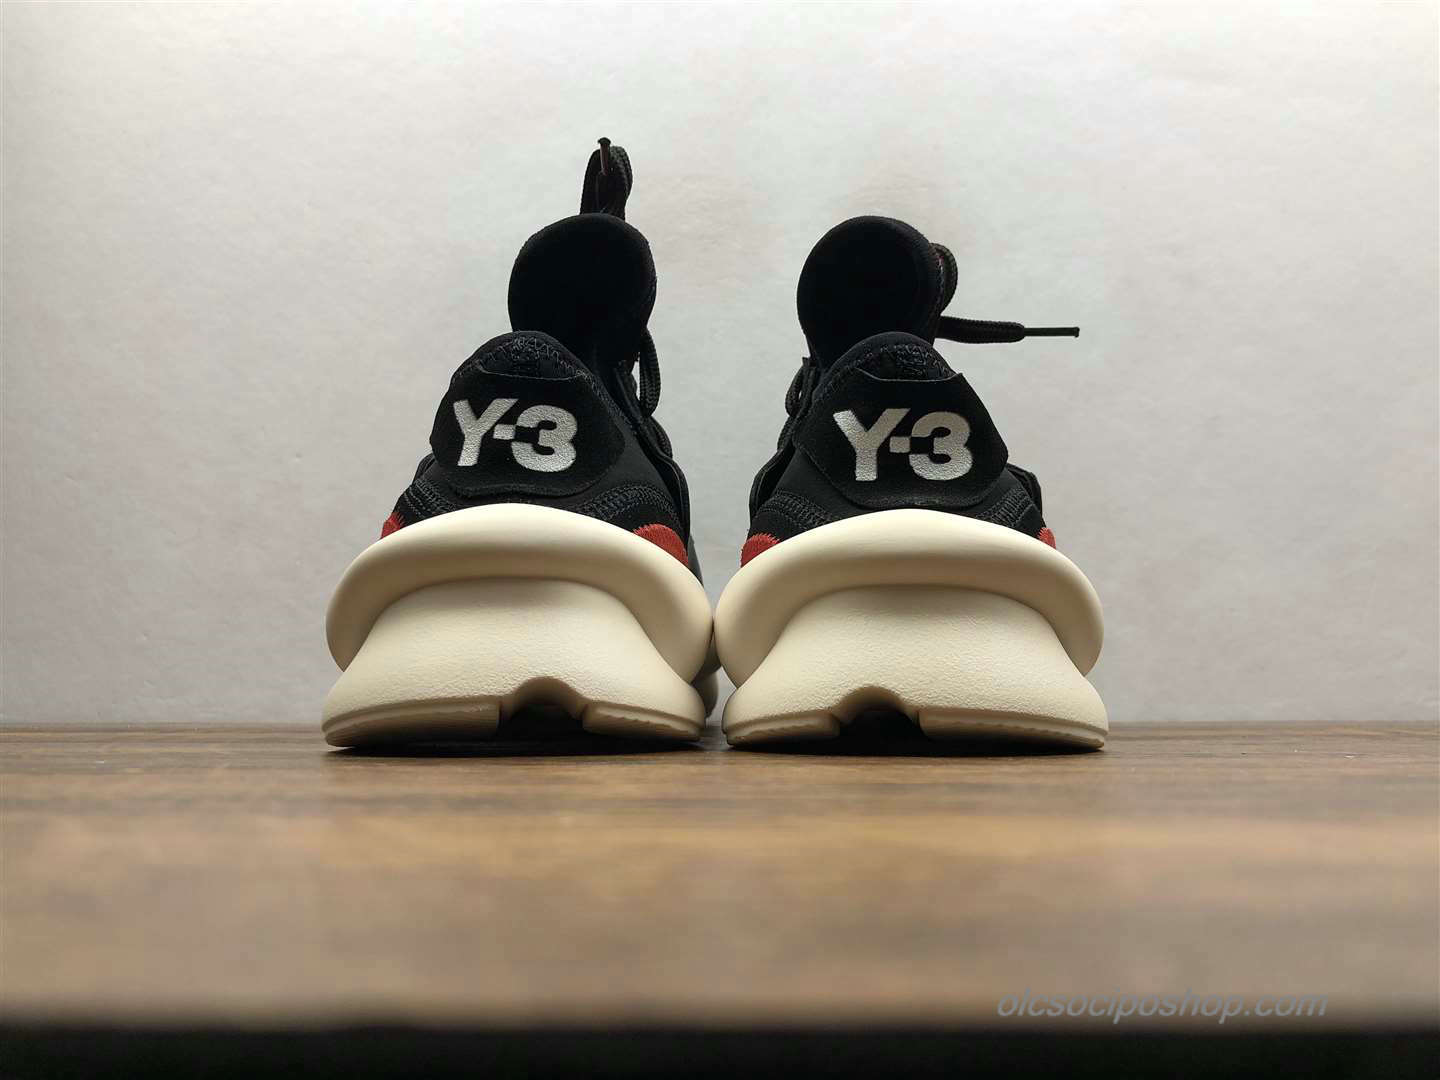 Yohji Yamamoto x Adidas Y-3 Kaiwa Chunky Fekete/Piszkosfehér/Piros Cipők (A8860) - Kattintásra bezárul